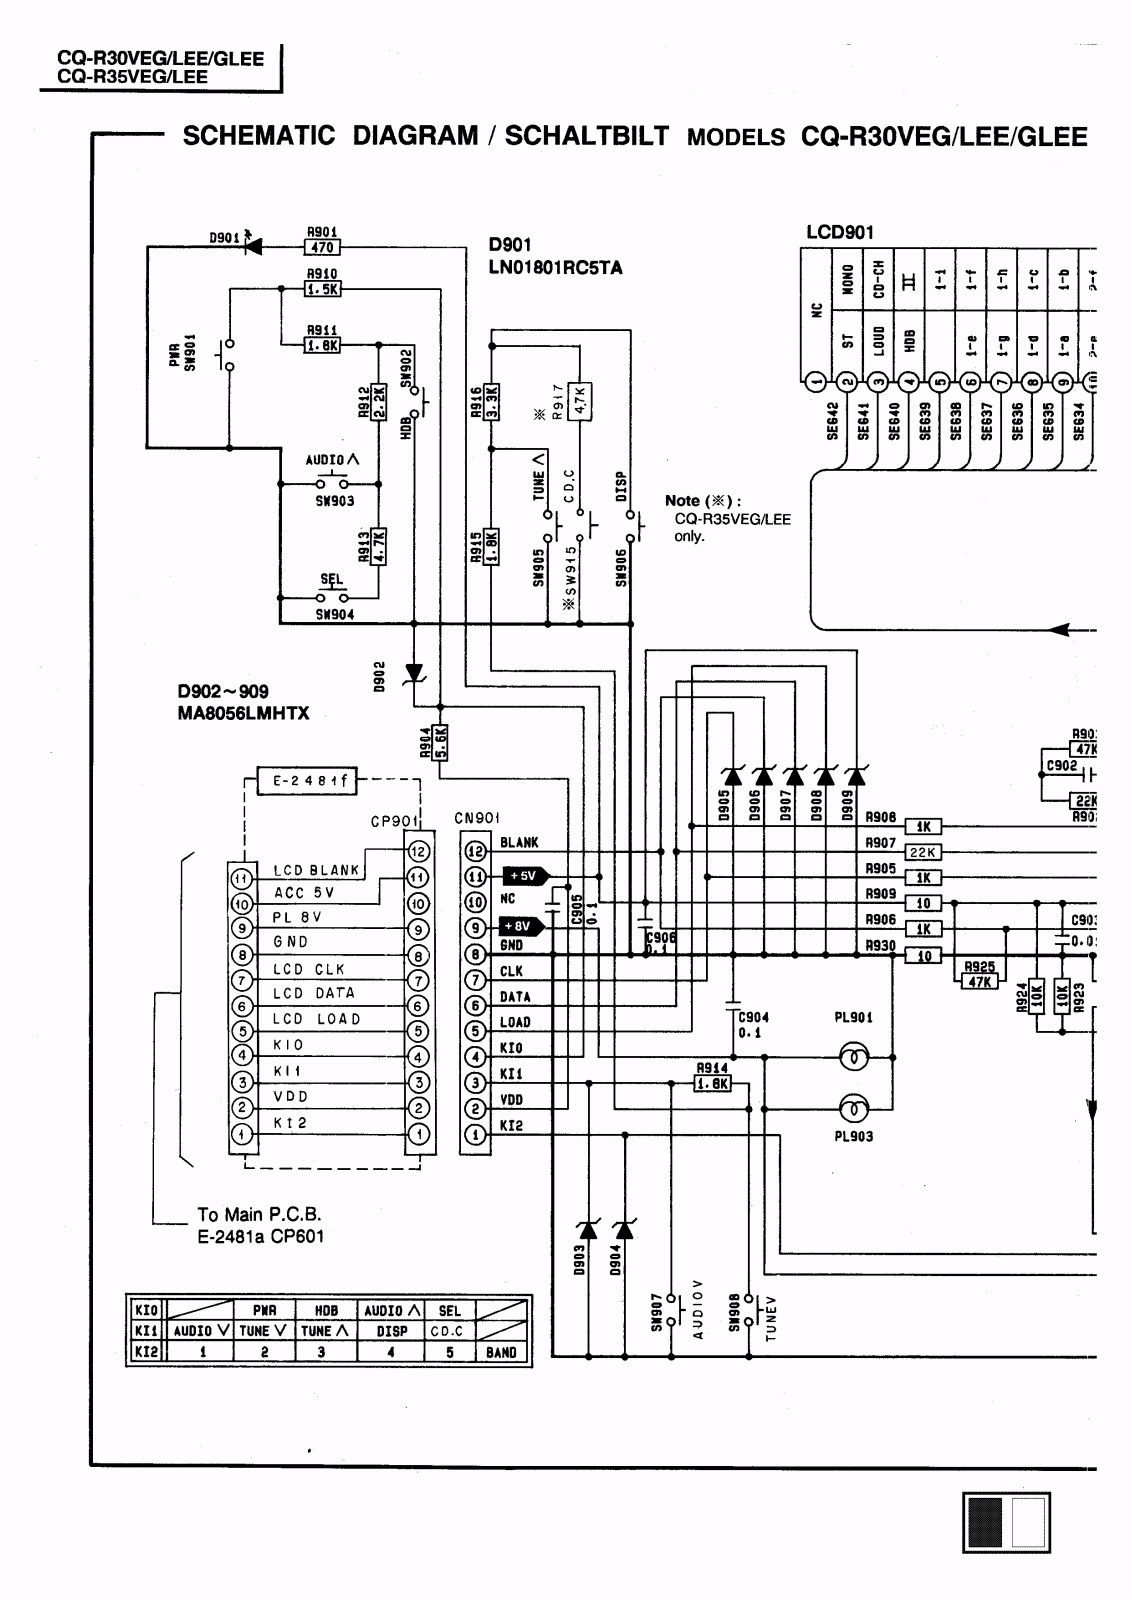 Panasonic CQR-30-GLEE, CQR-30-LEE, CQR-30-VEG, CQR-35-VEG, CQR-35-LEE Schematic